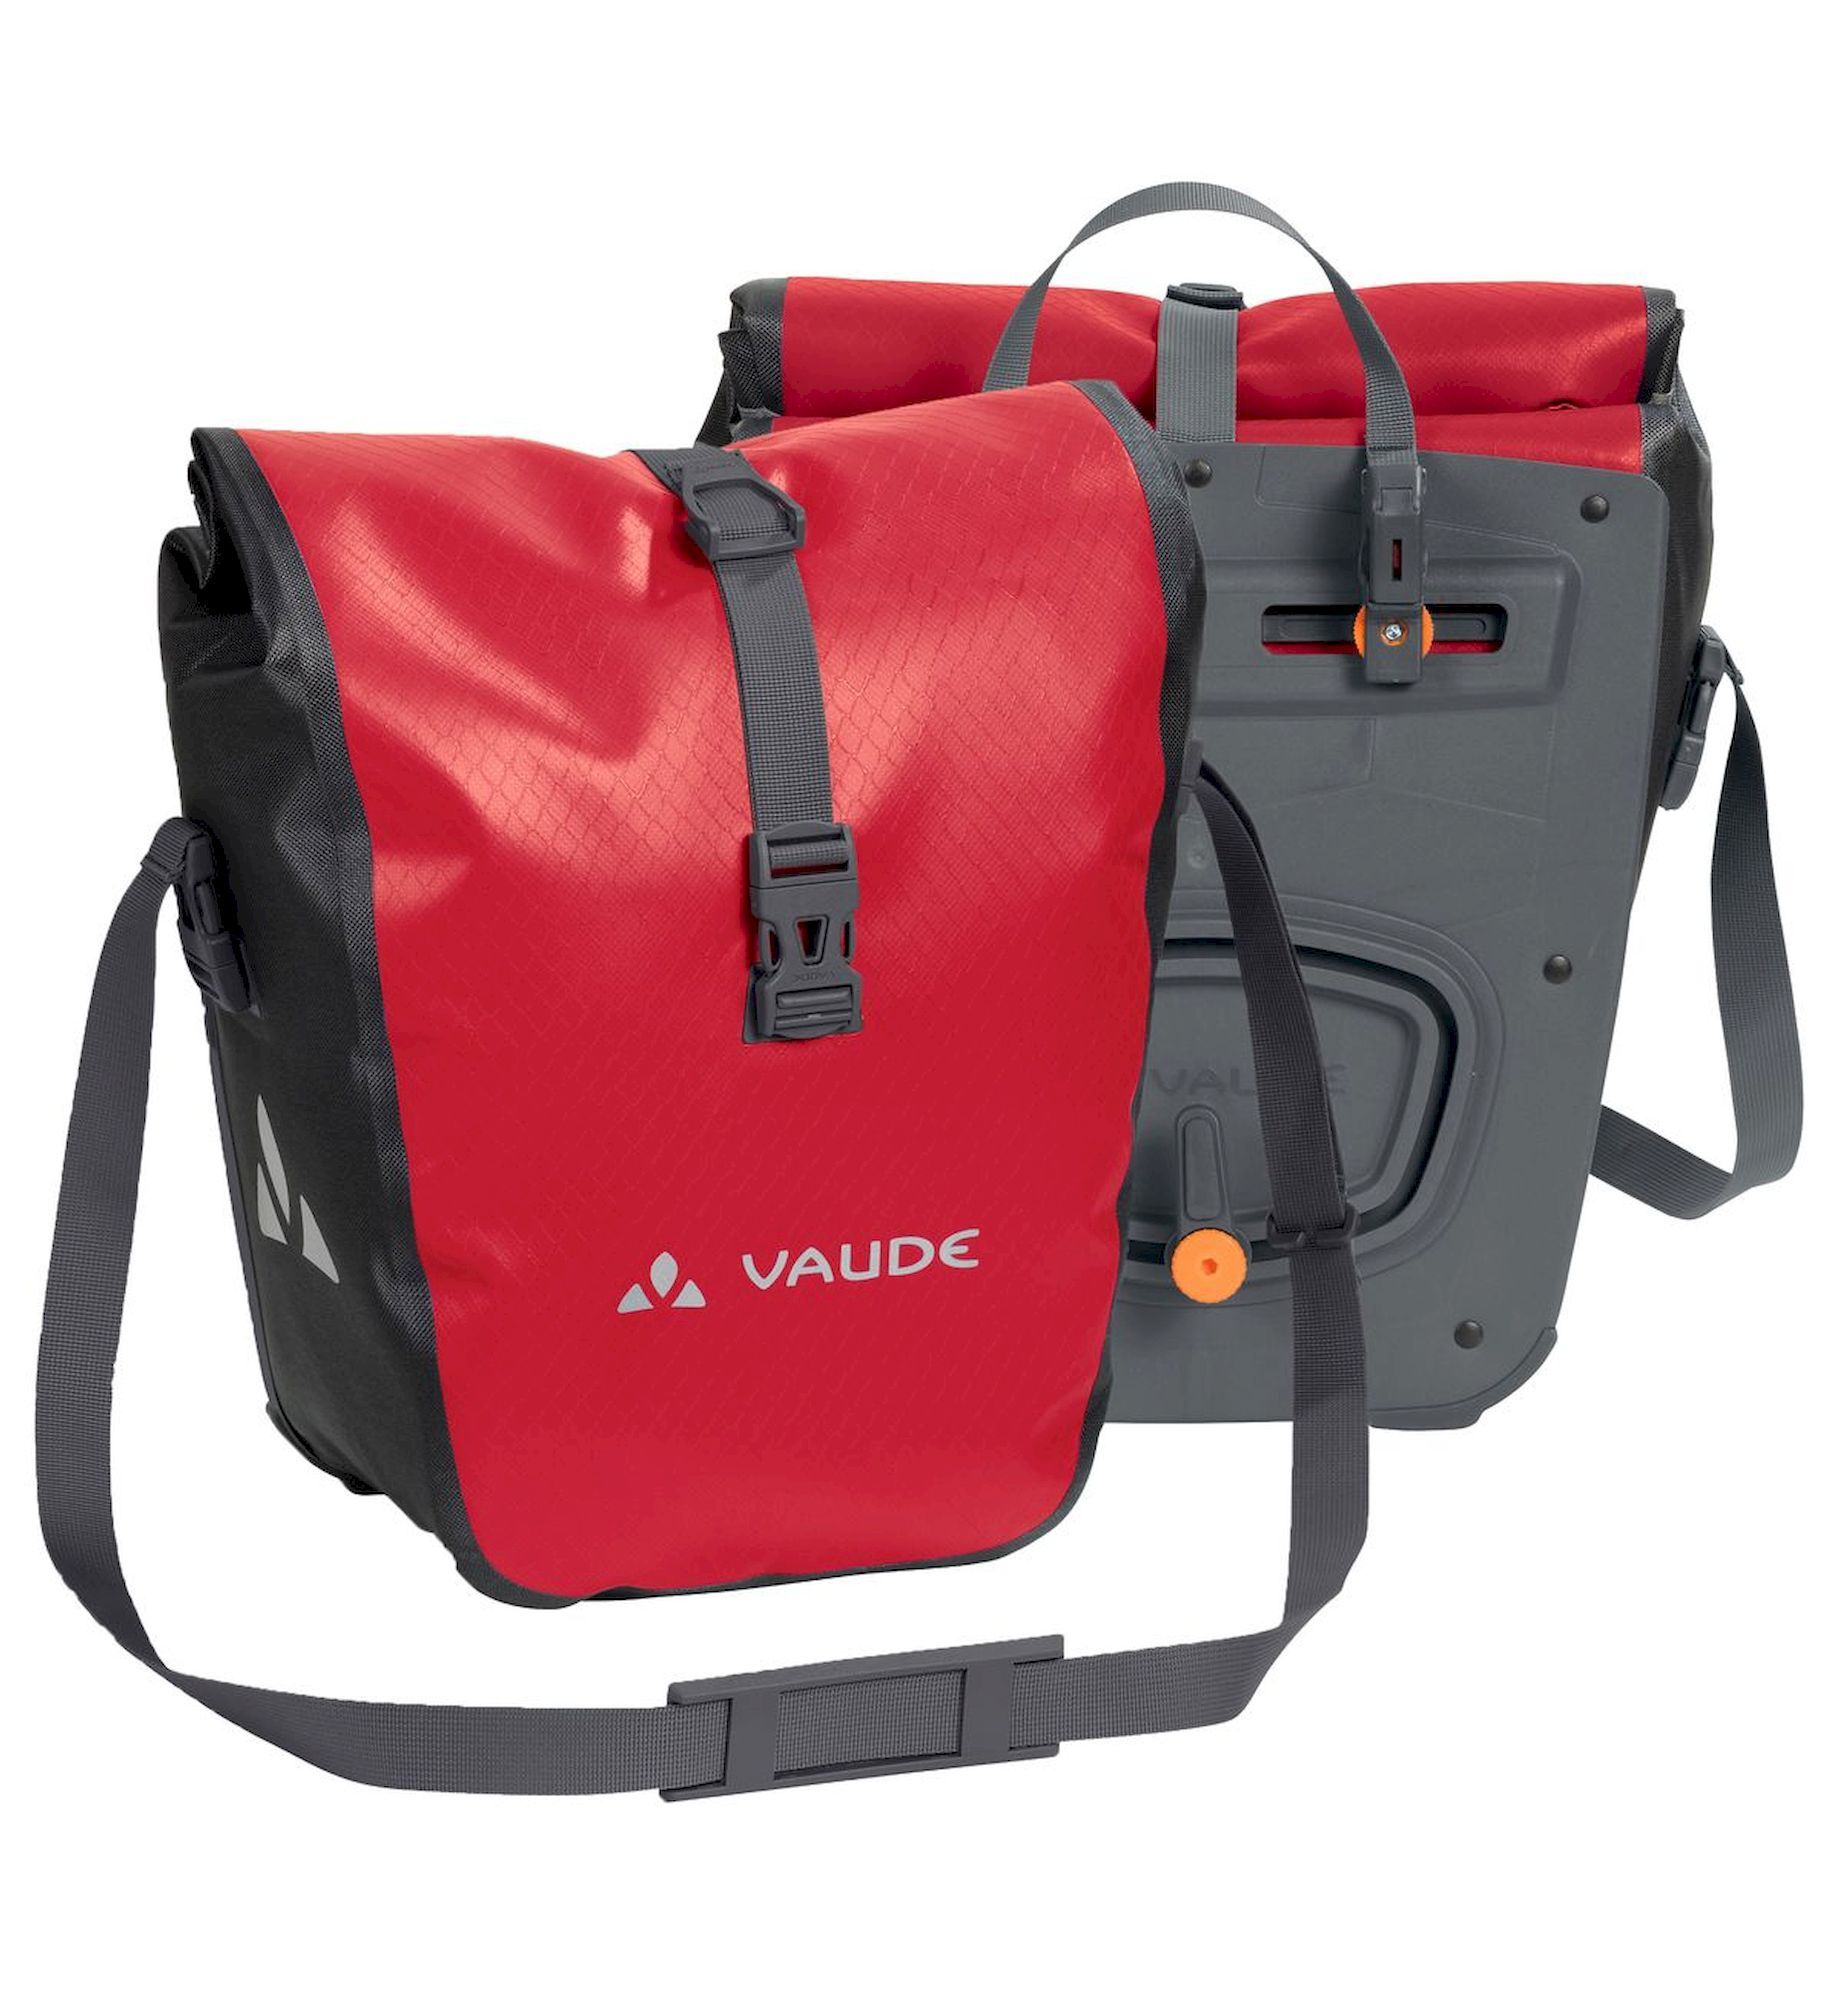 Vaude - Aqua Front - Bolsa para el portaequipaje